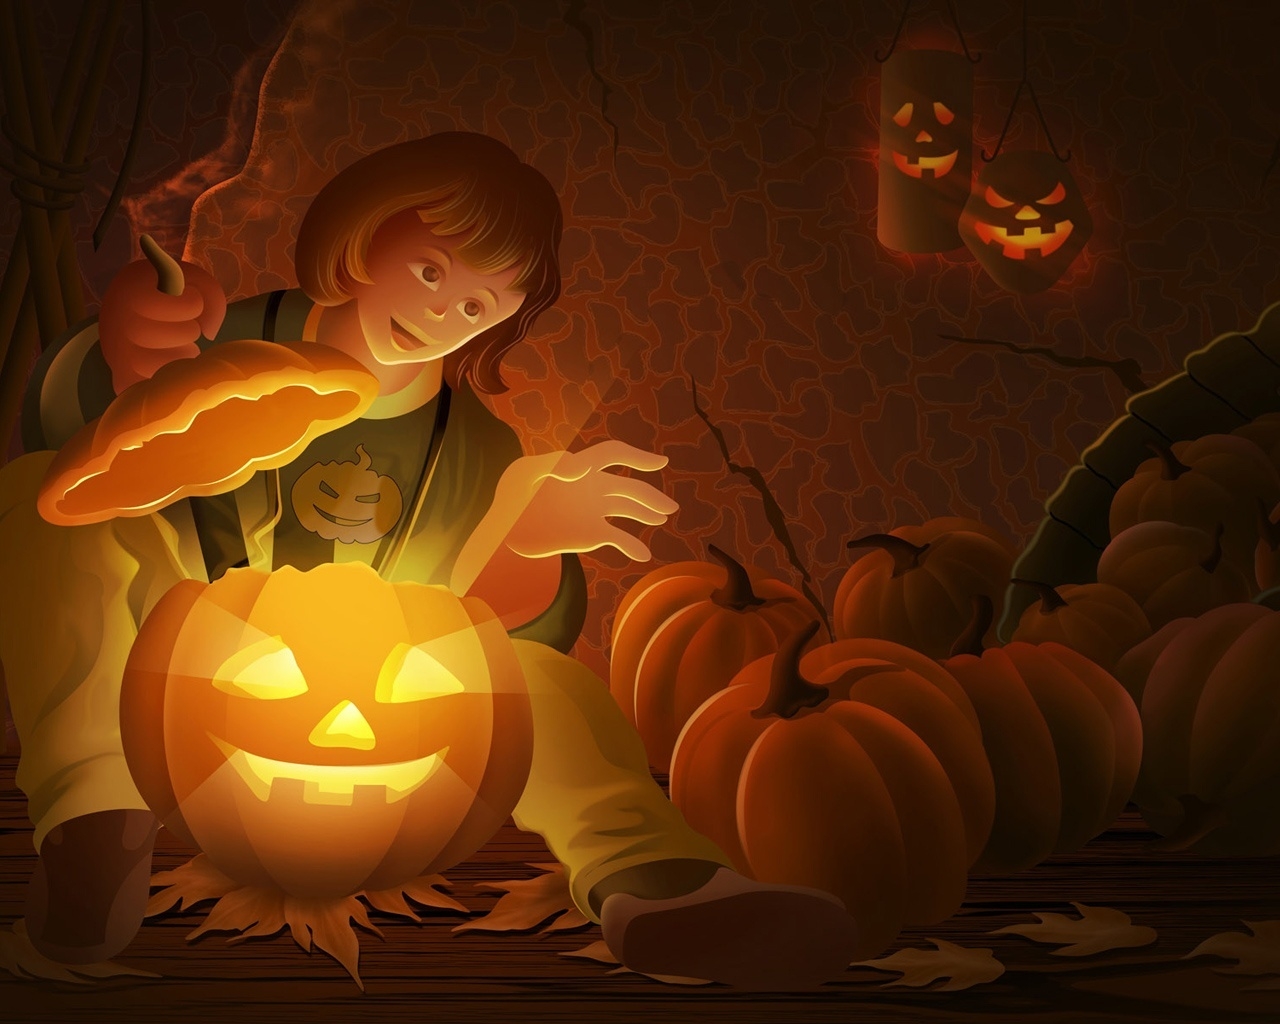 Cool Halloween Pumpkin for 1280 x 1024 resolution